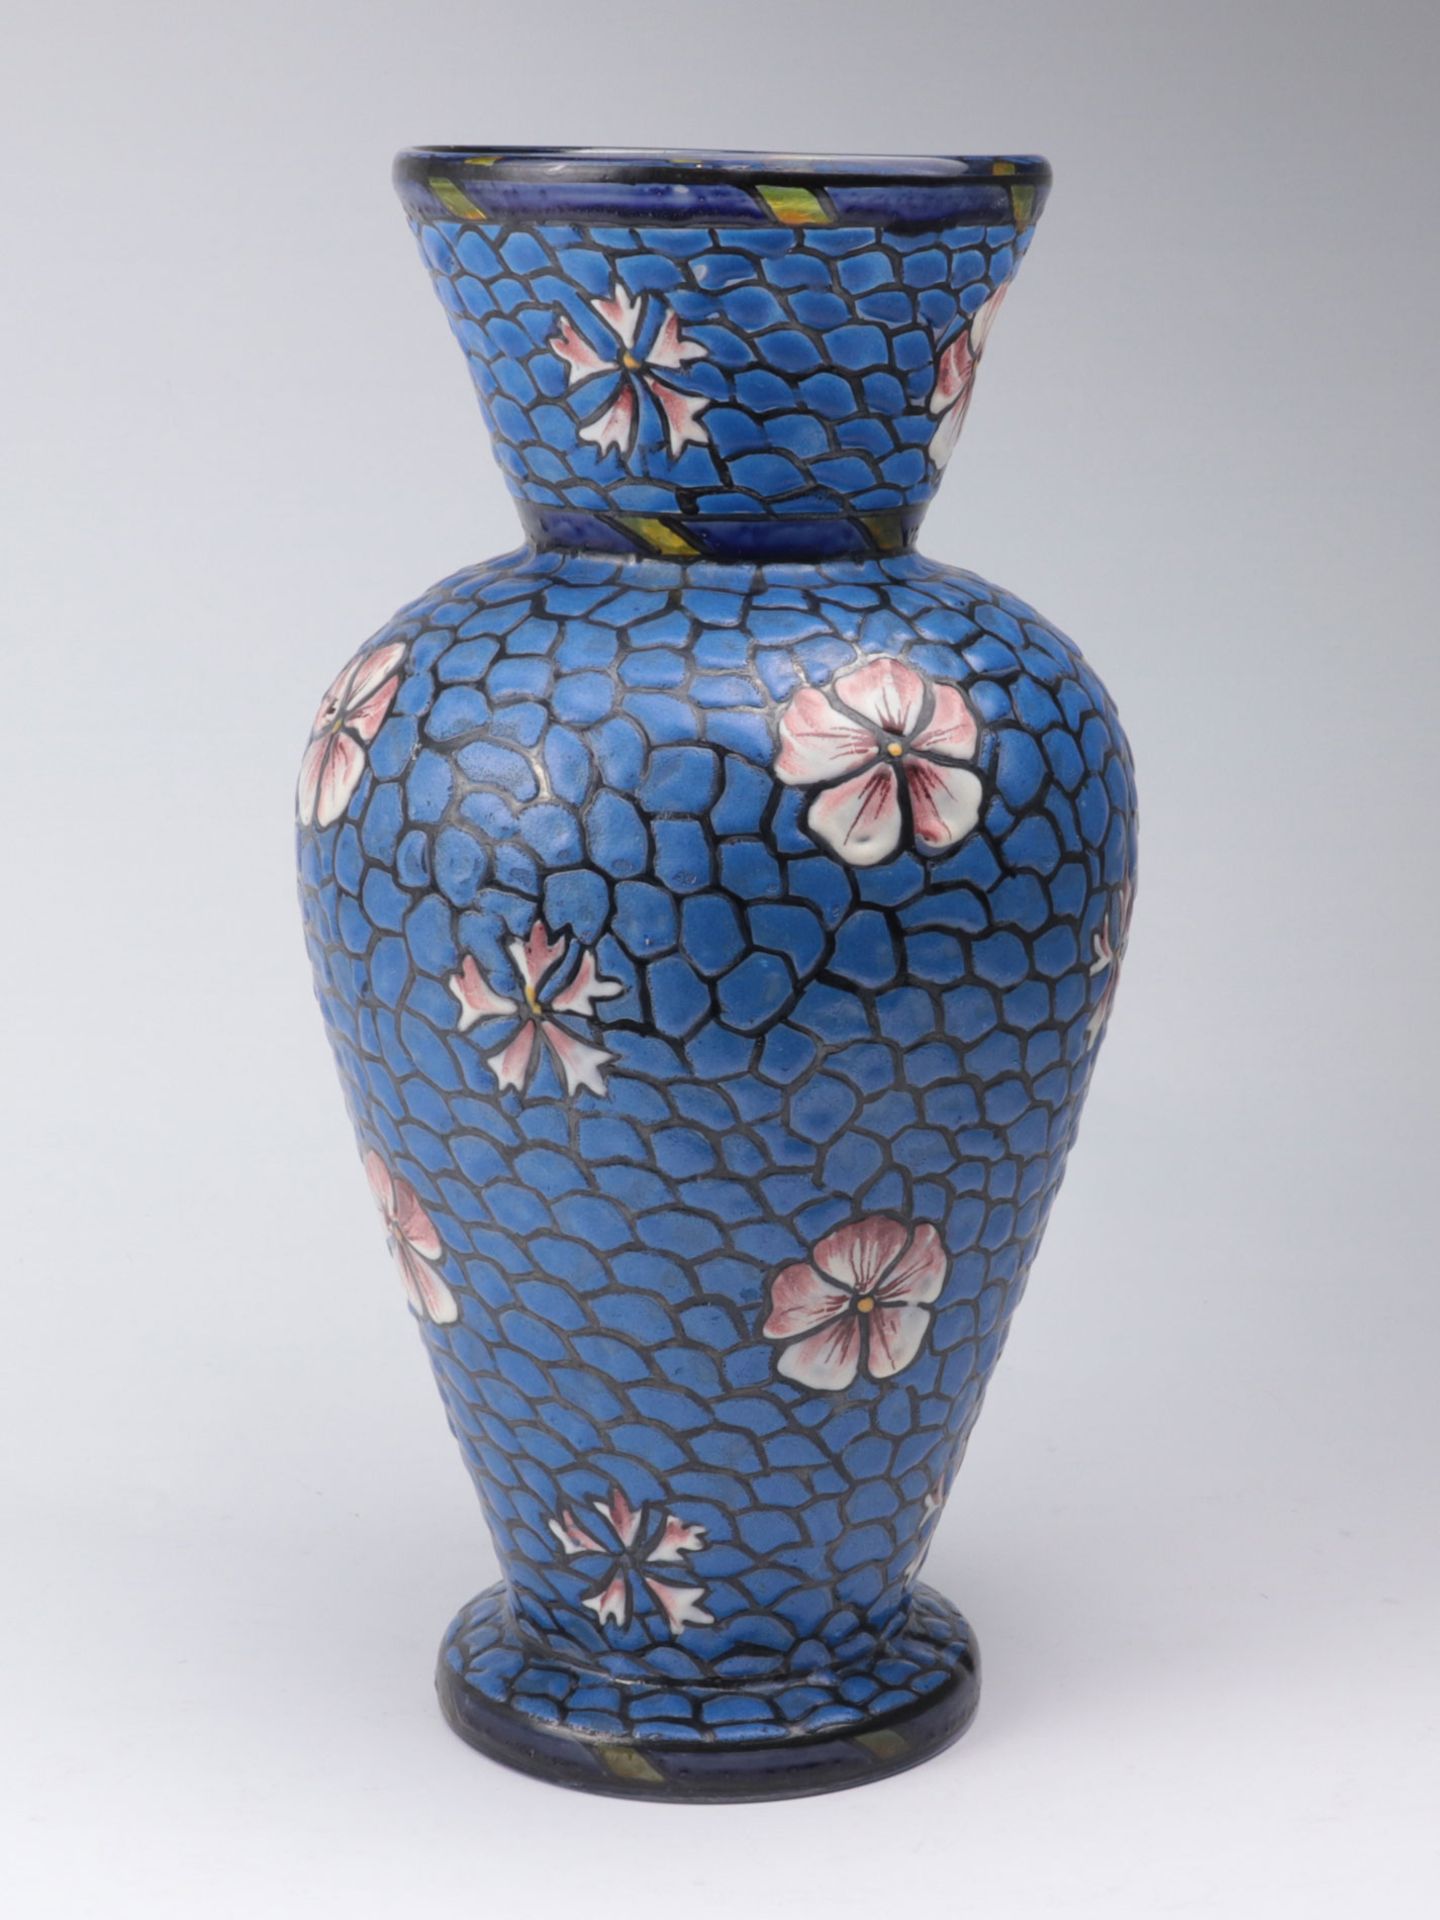 Vase um 1910/20, Frankreich, im Stil von Mont Joye (Legras), farbloses Glas, ausgezoge